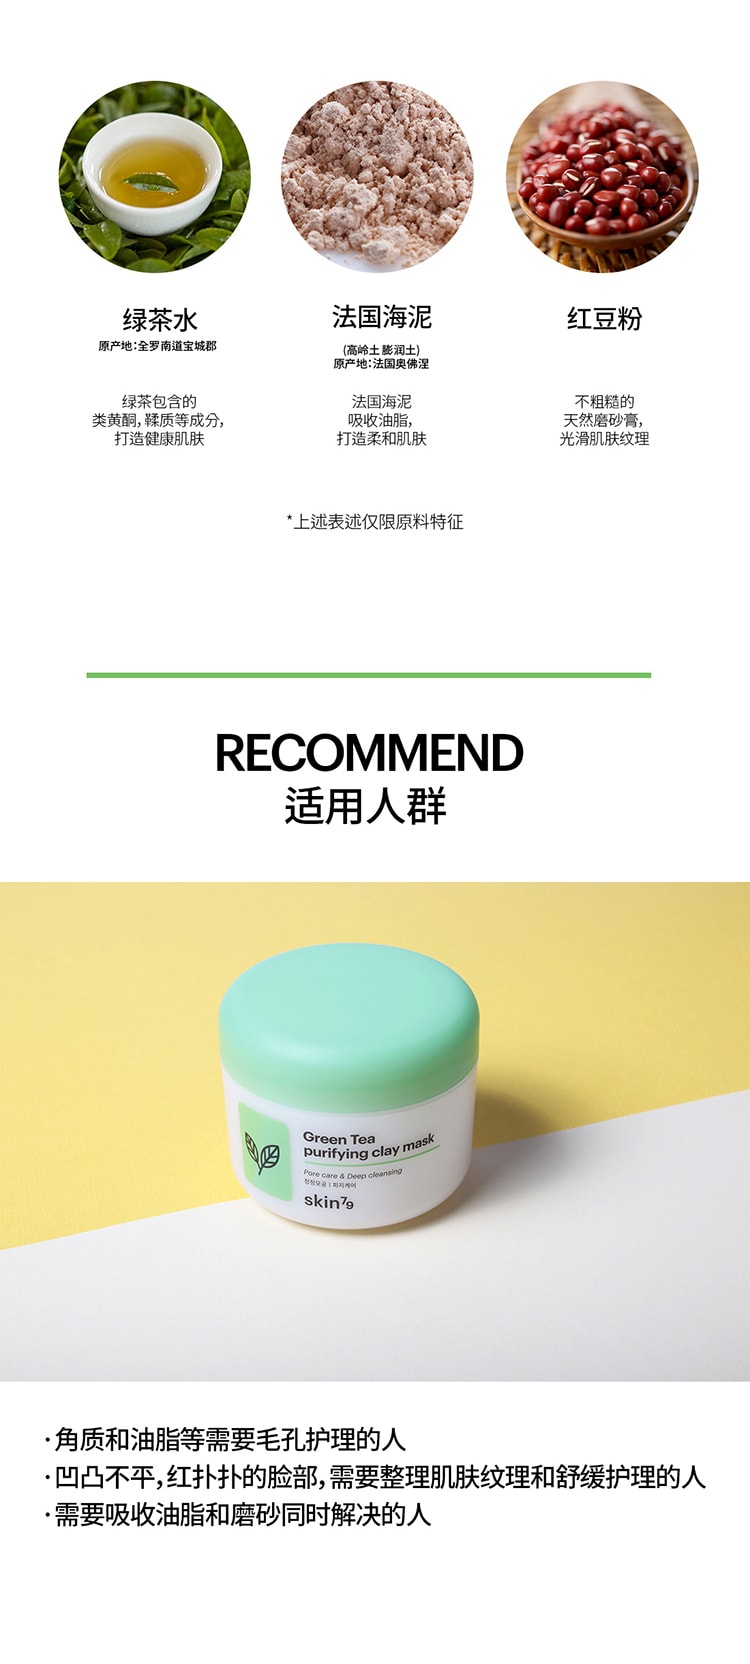 韓國 Skin79 Green Tea purifying clay mask 100ml